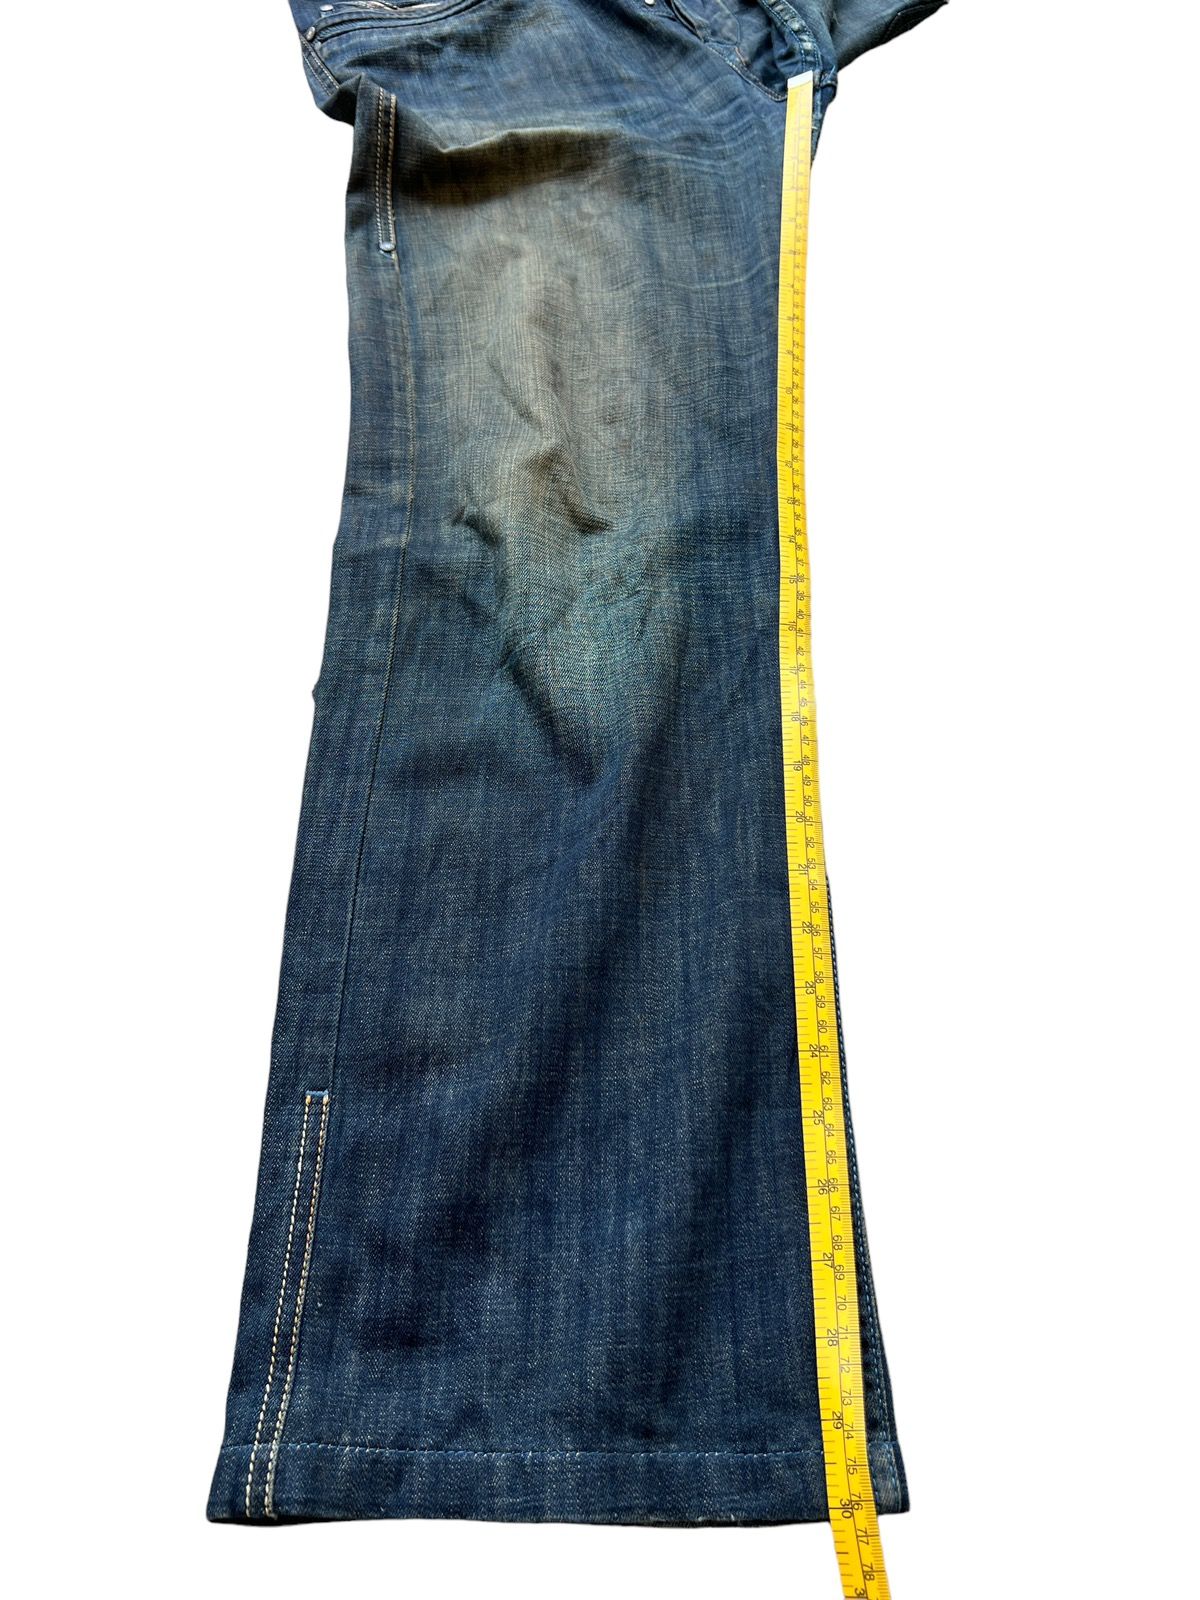 Vintage Diesel Industry Distressed Denim Jeans 34x30 - 13